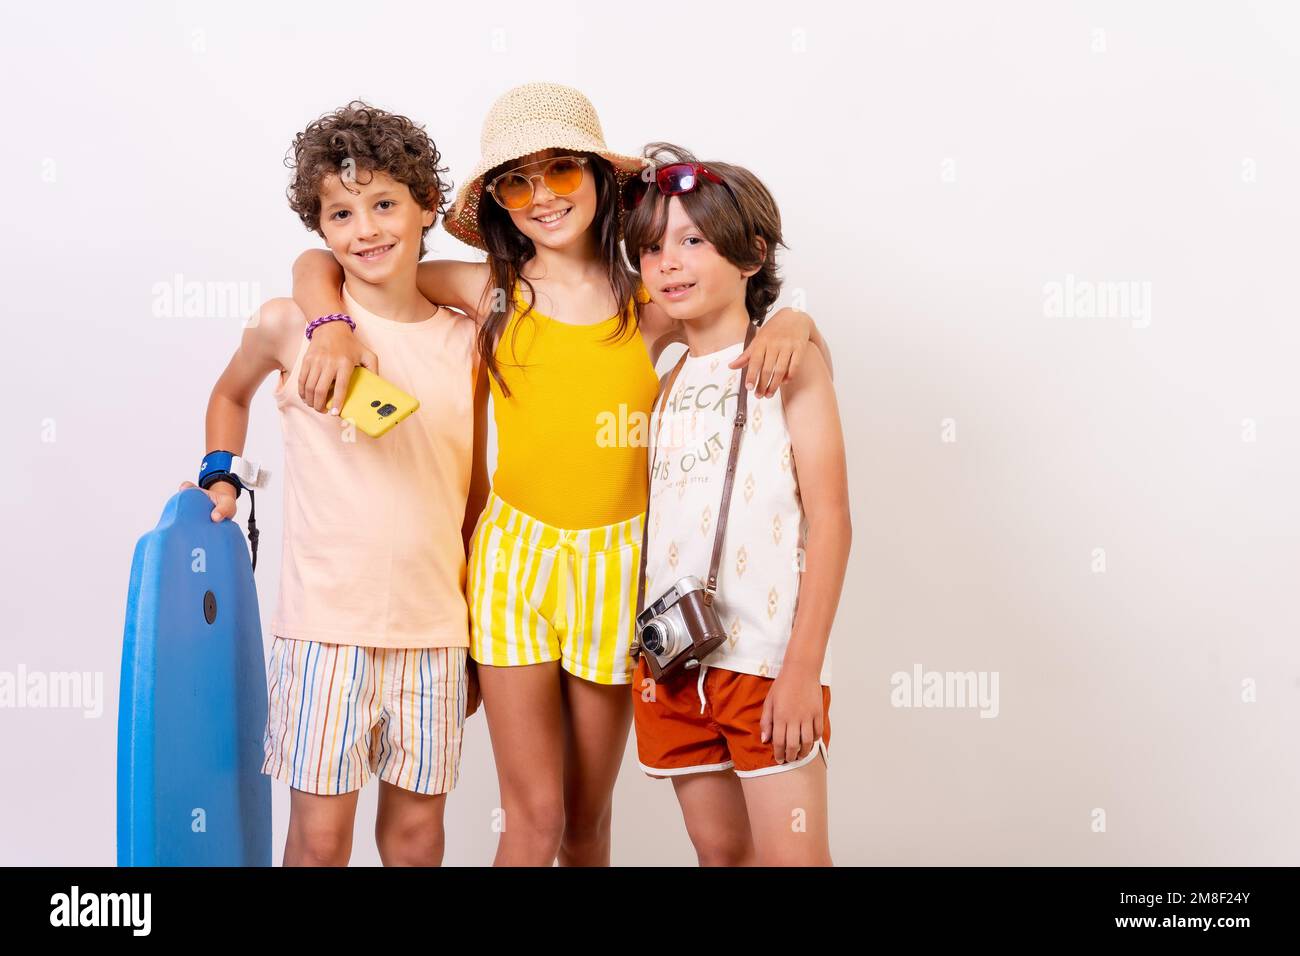 Studioaufnahme von Kindern, die im Sommerurlaub lächeln und Spaß haben, auf weißem Hintergrund Stockfoto